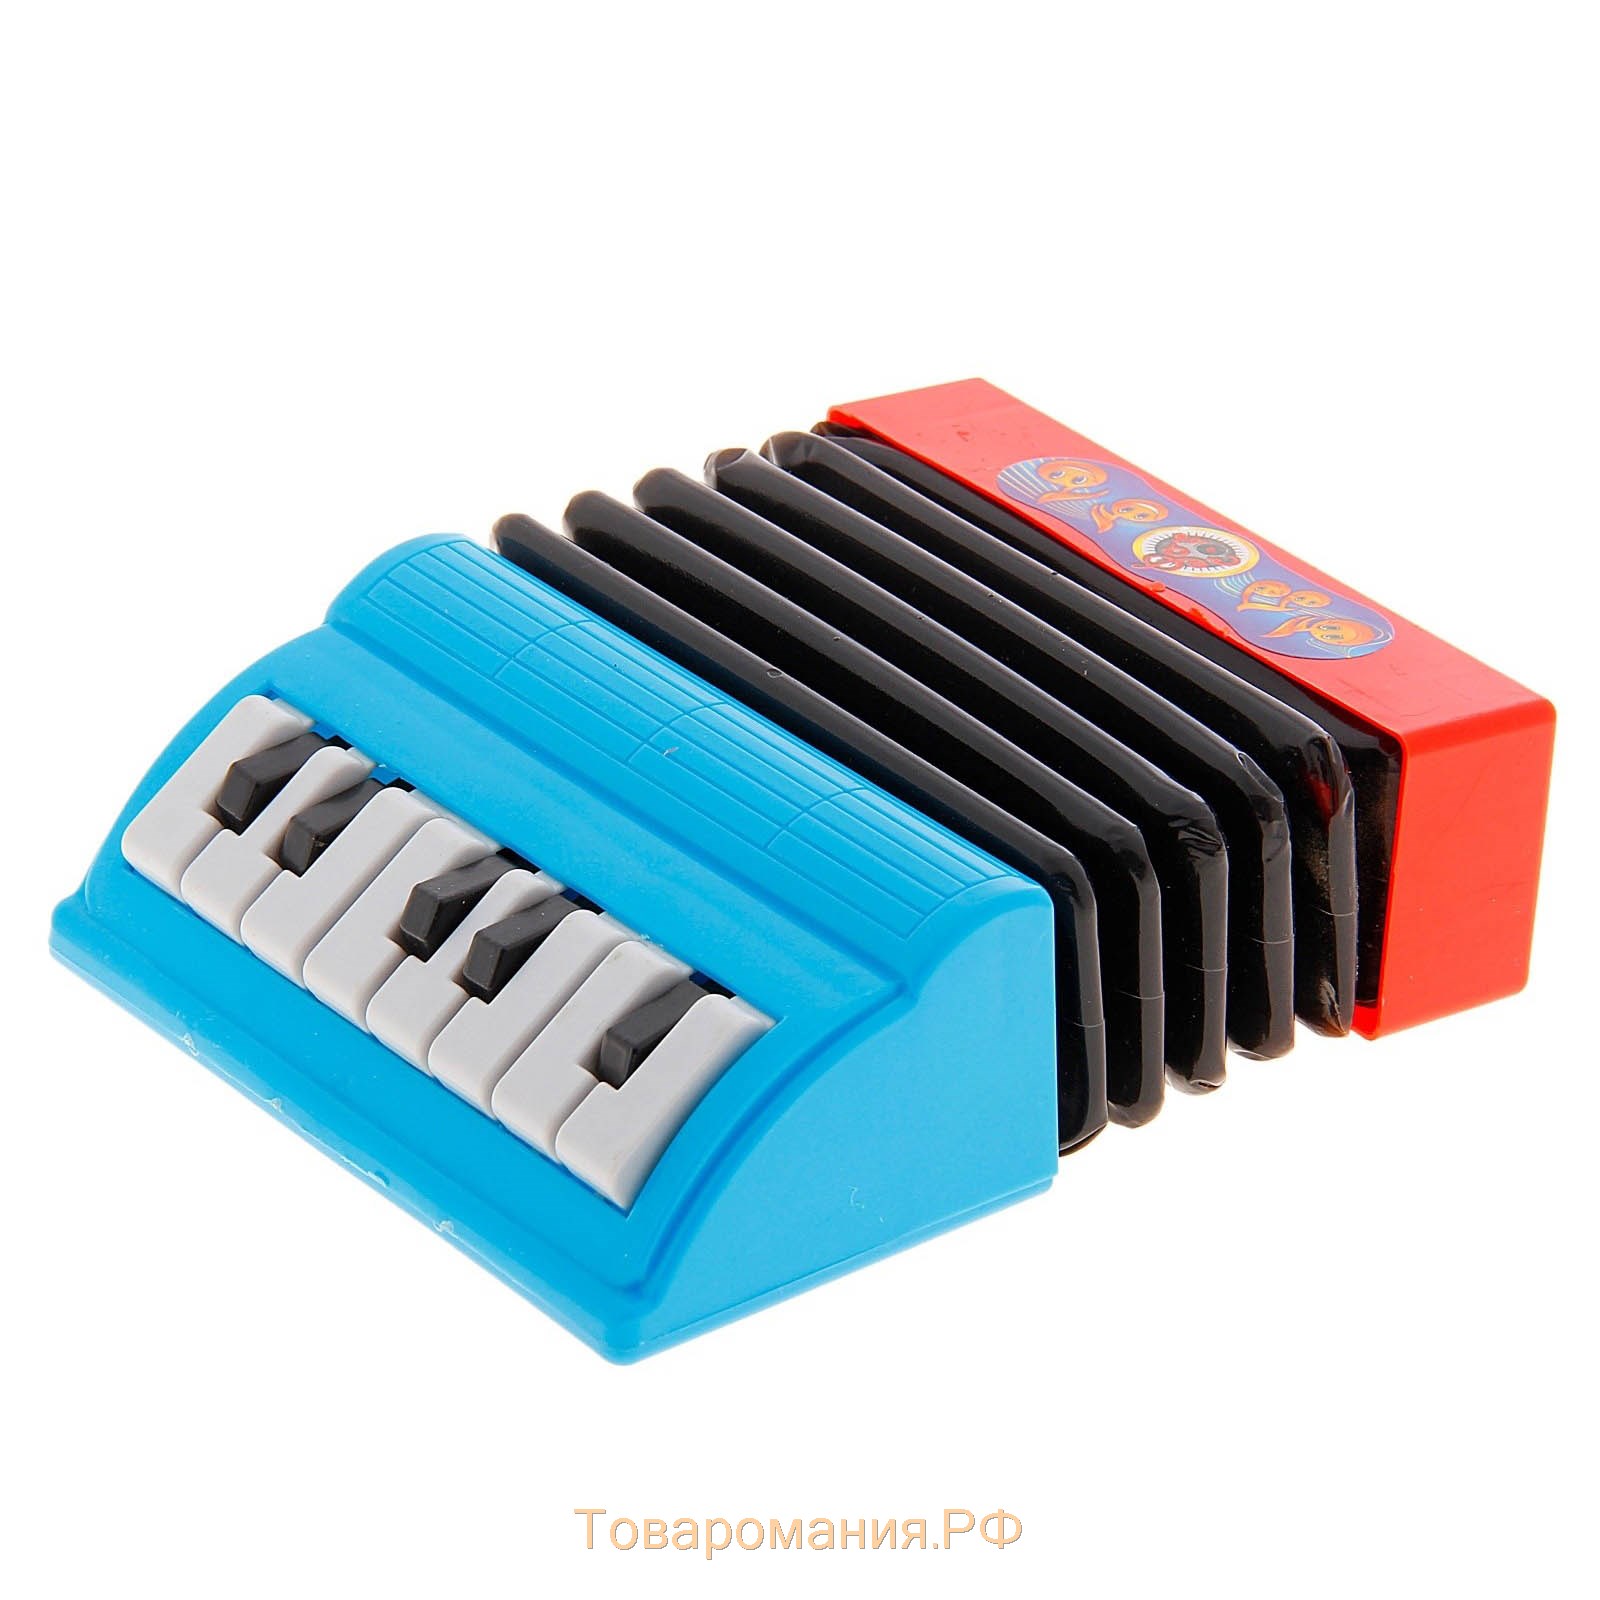 Музыкальная игрушка аккордеон «Музыкальный взрыв», 13 клавиш, работает от батареек, цвета МИКС